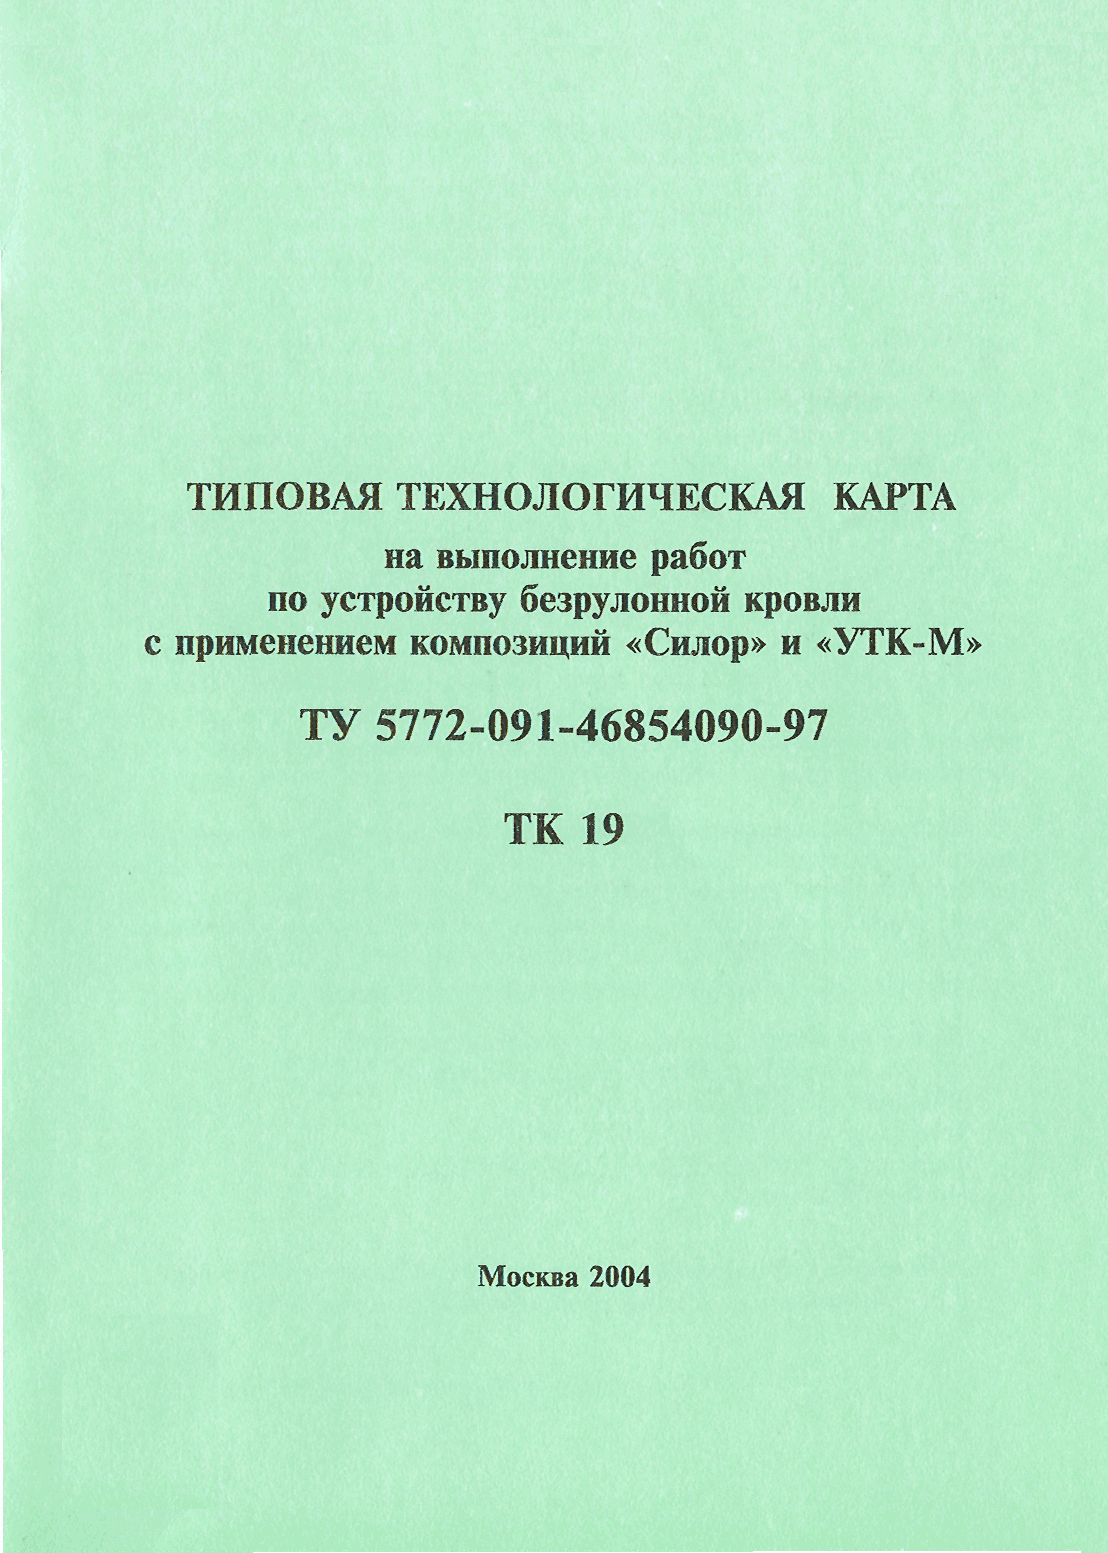 ТК 19